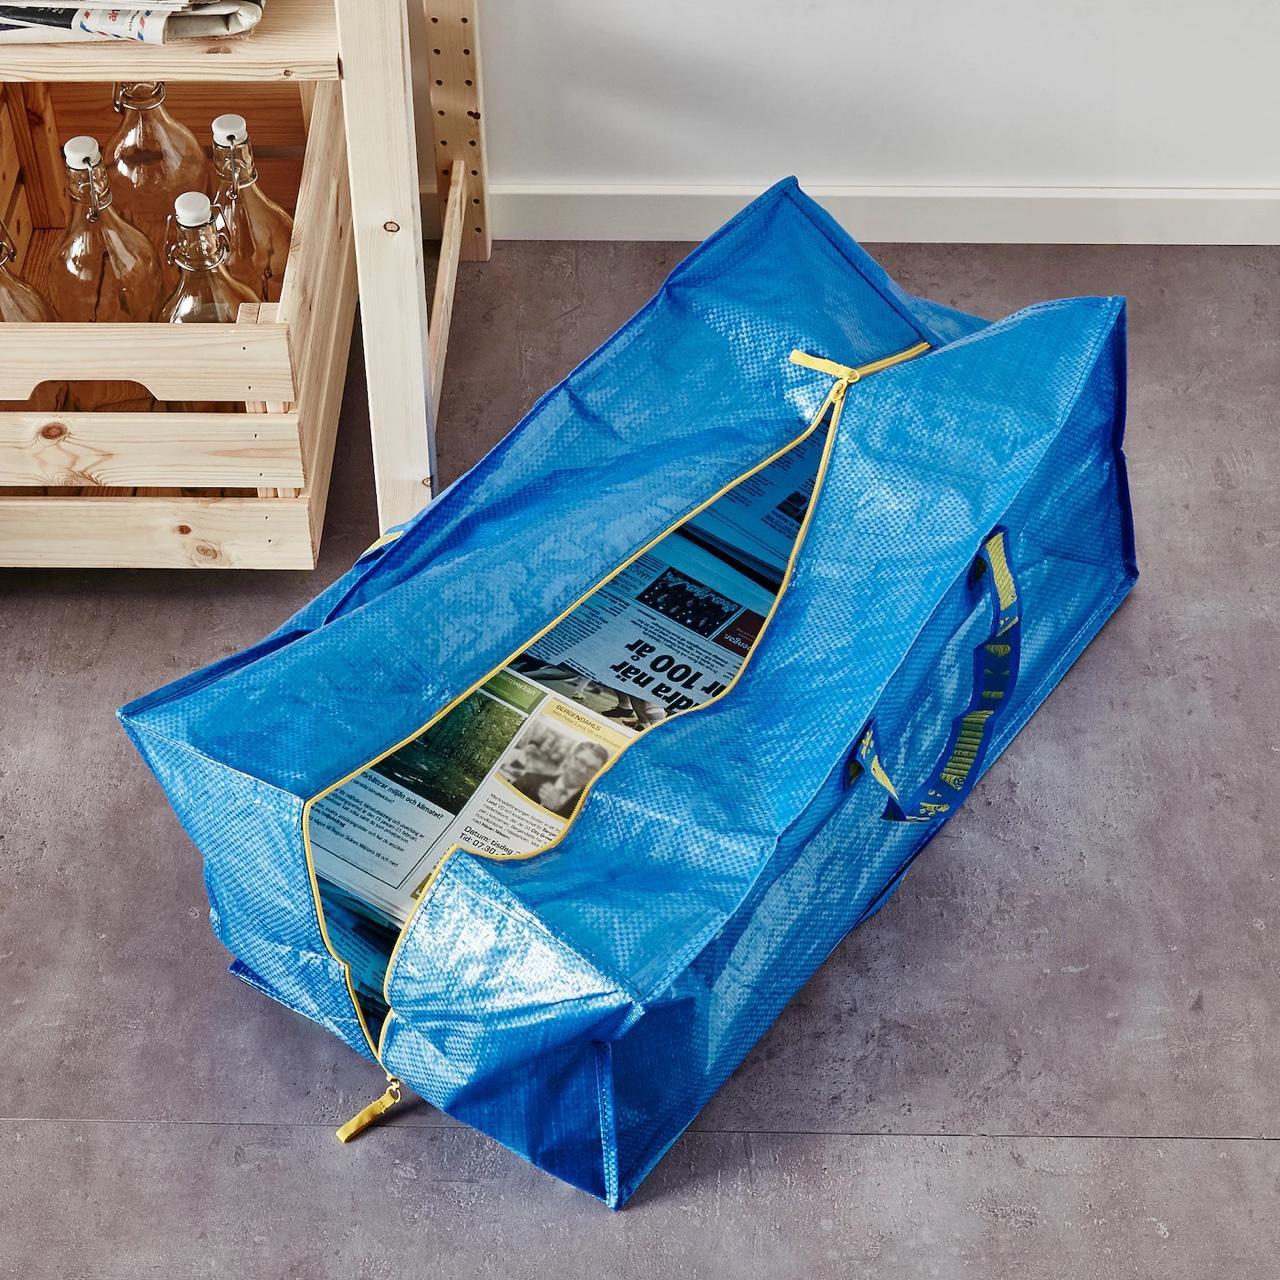 IKEA - The Blue Bag 